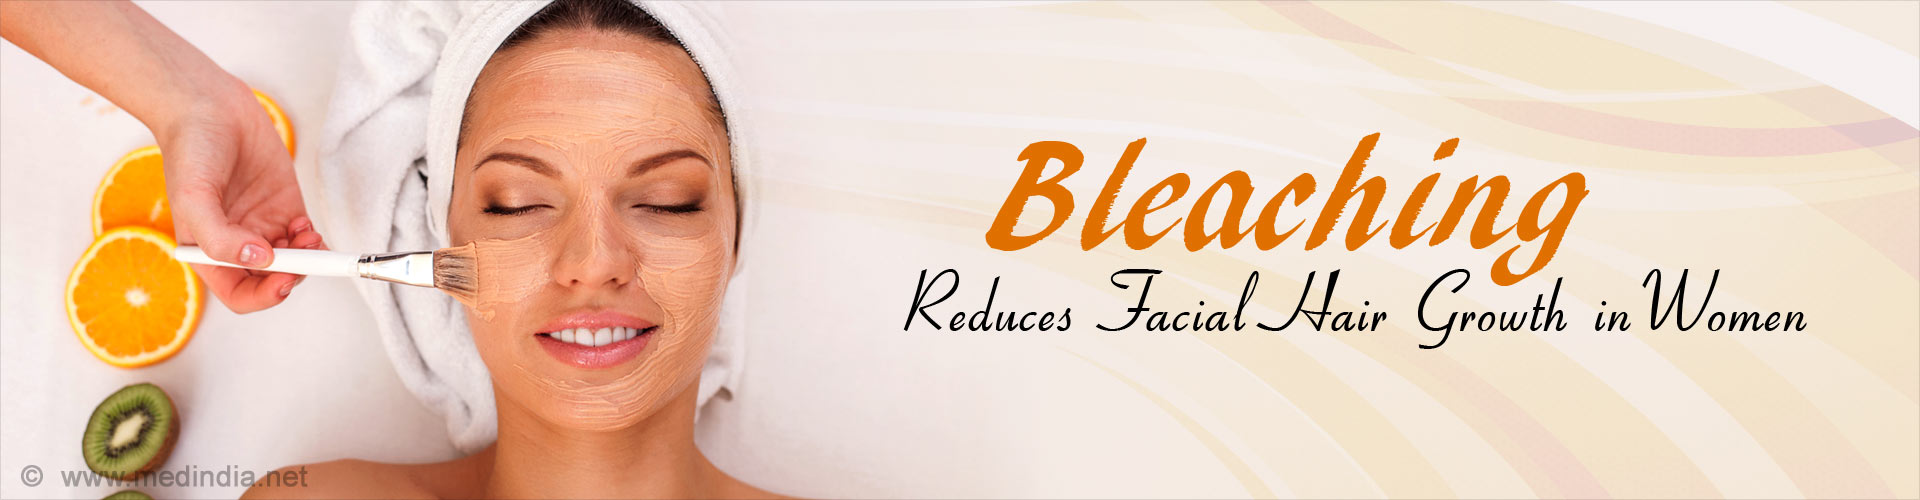 Bleaching Reduces Facial Hair Growth in Women
